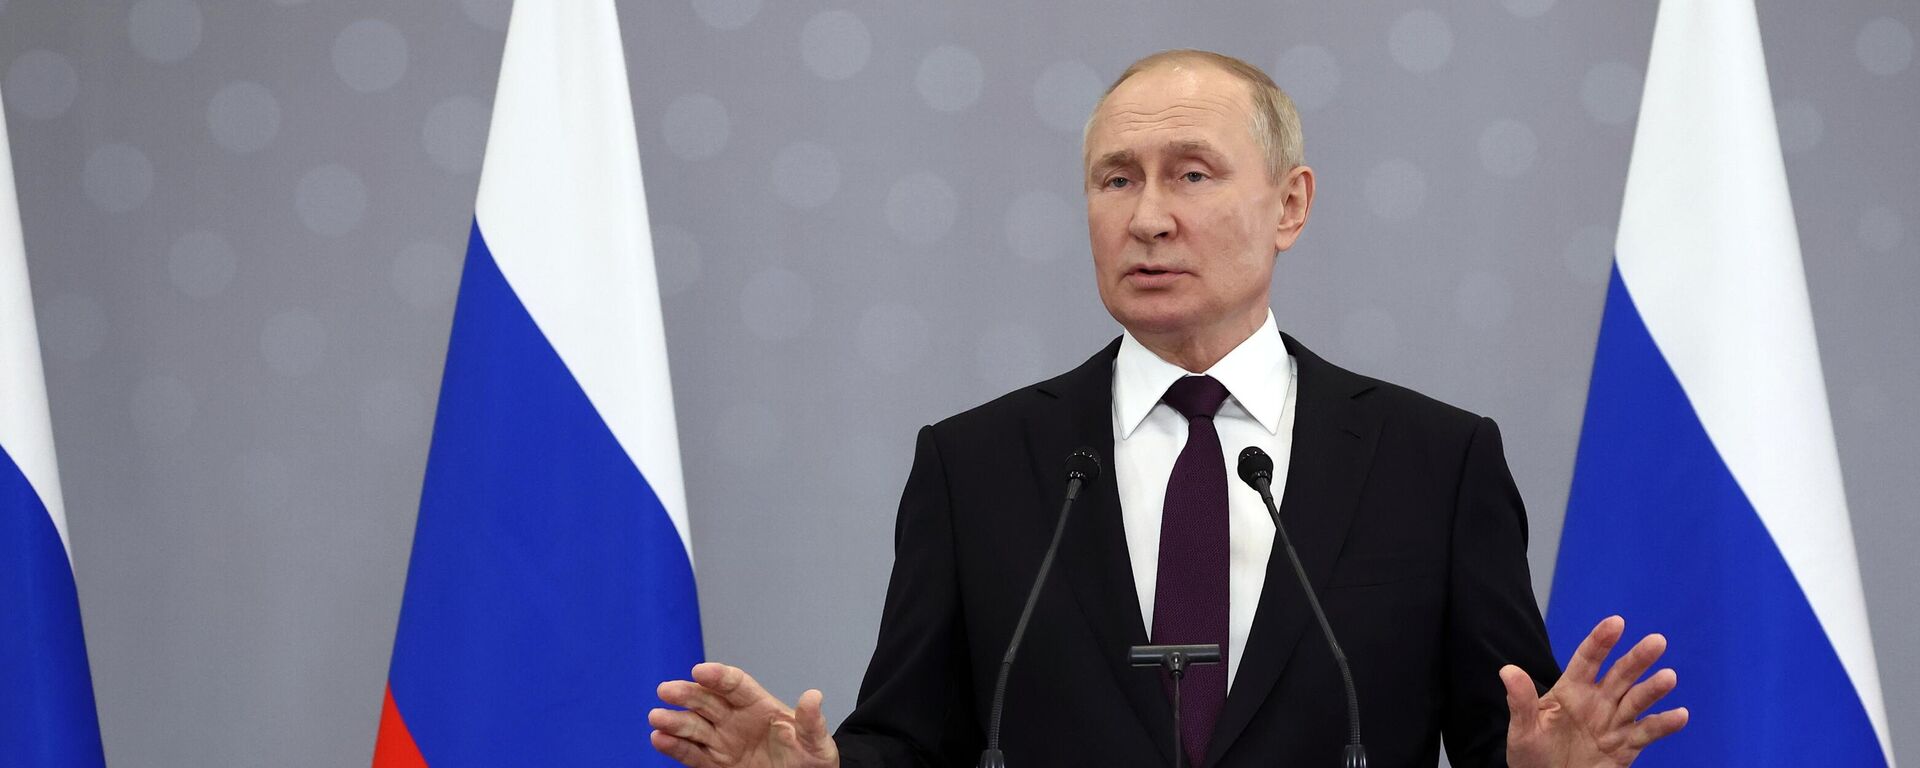 Vladimir Putin, presidente da Rússia, fala após reunião dos chefes de Estado da Comunidade dos Estados Independentes (CEI), em 14 de outubro de 2022 - Sputnik Brasil, 1920, 14.10.2022